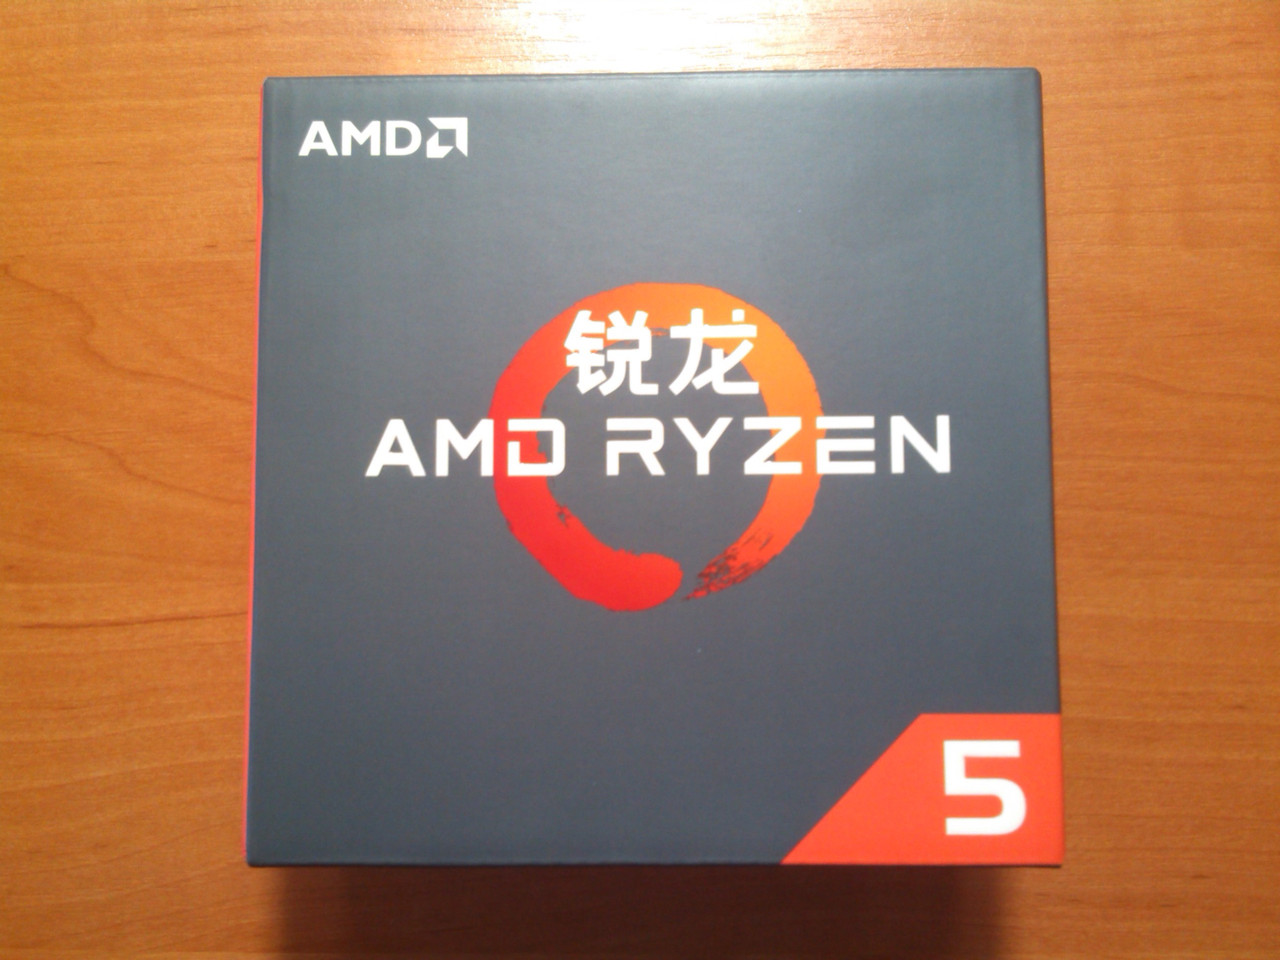 AMD Ryzen 5 1600X YD160XBCM6IAE сокет AM4 Новий!